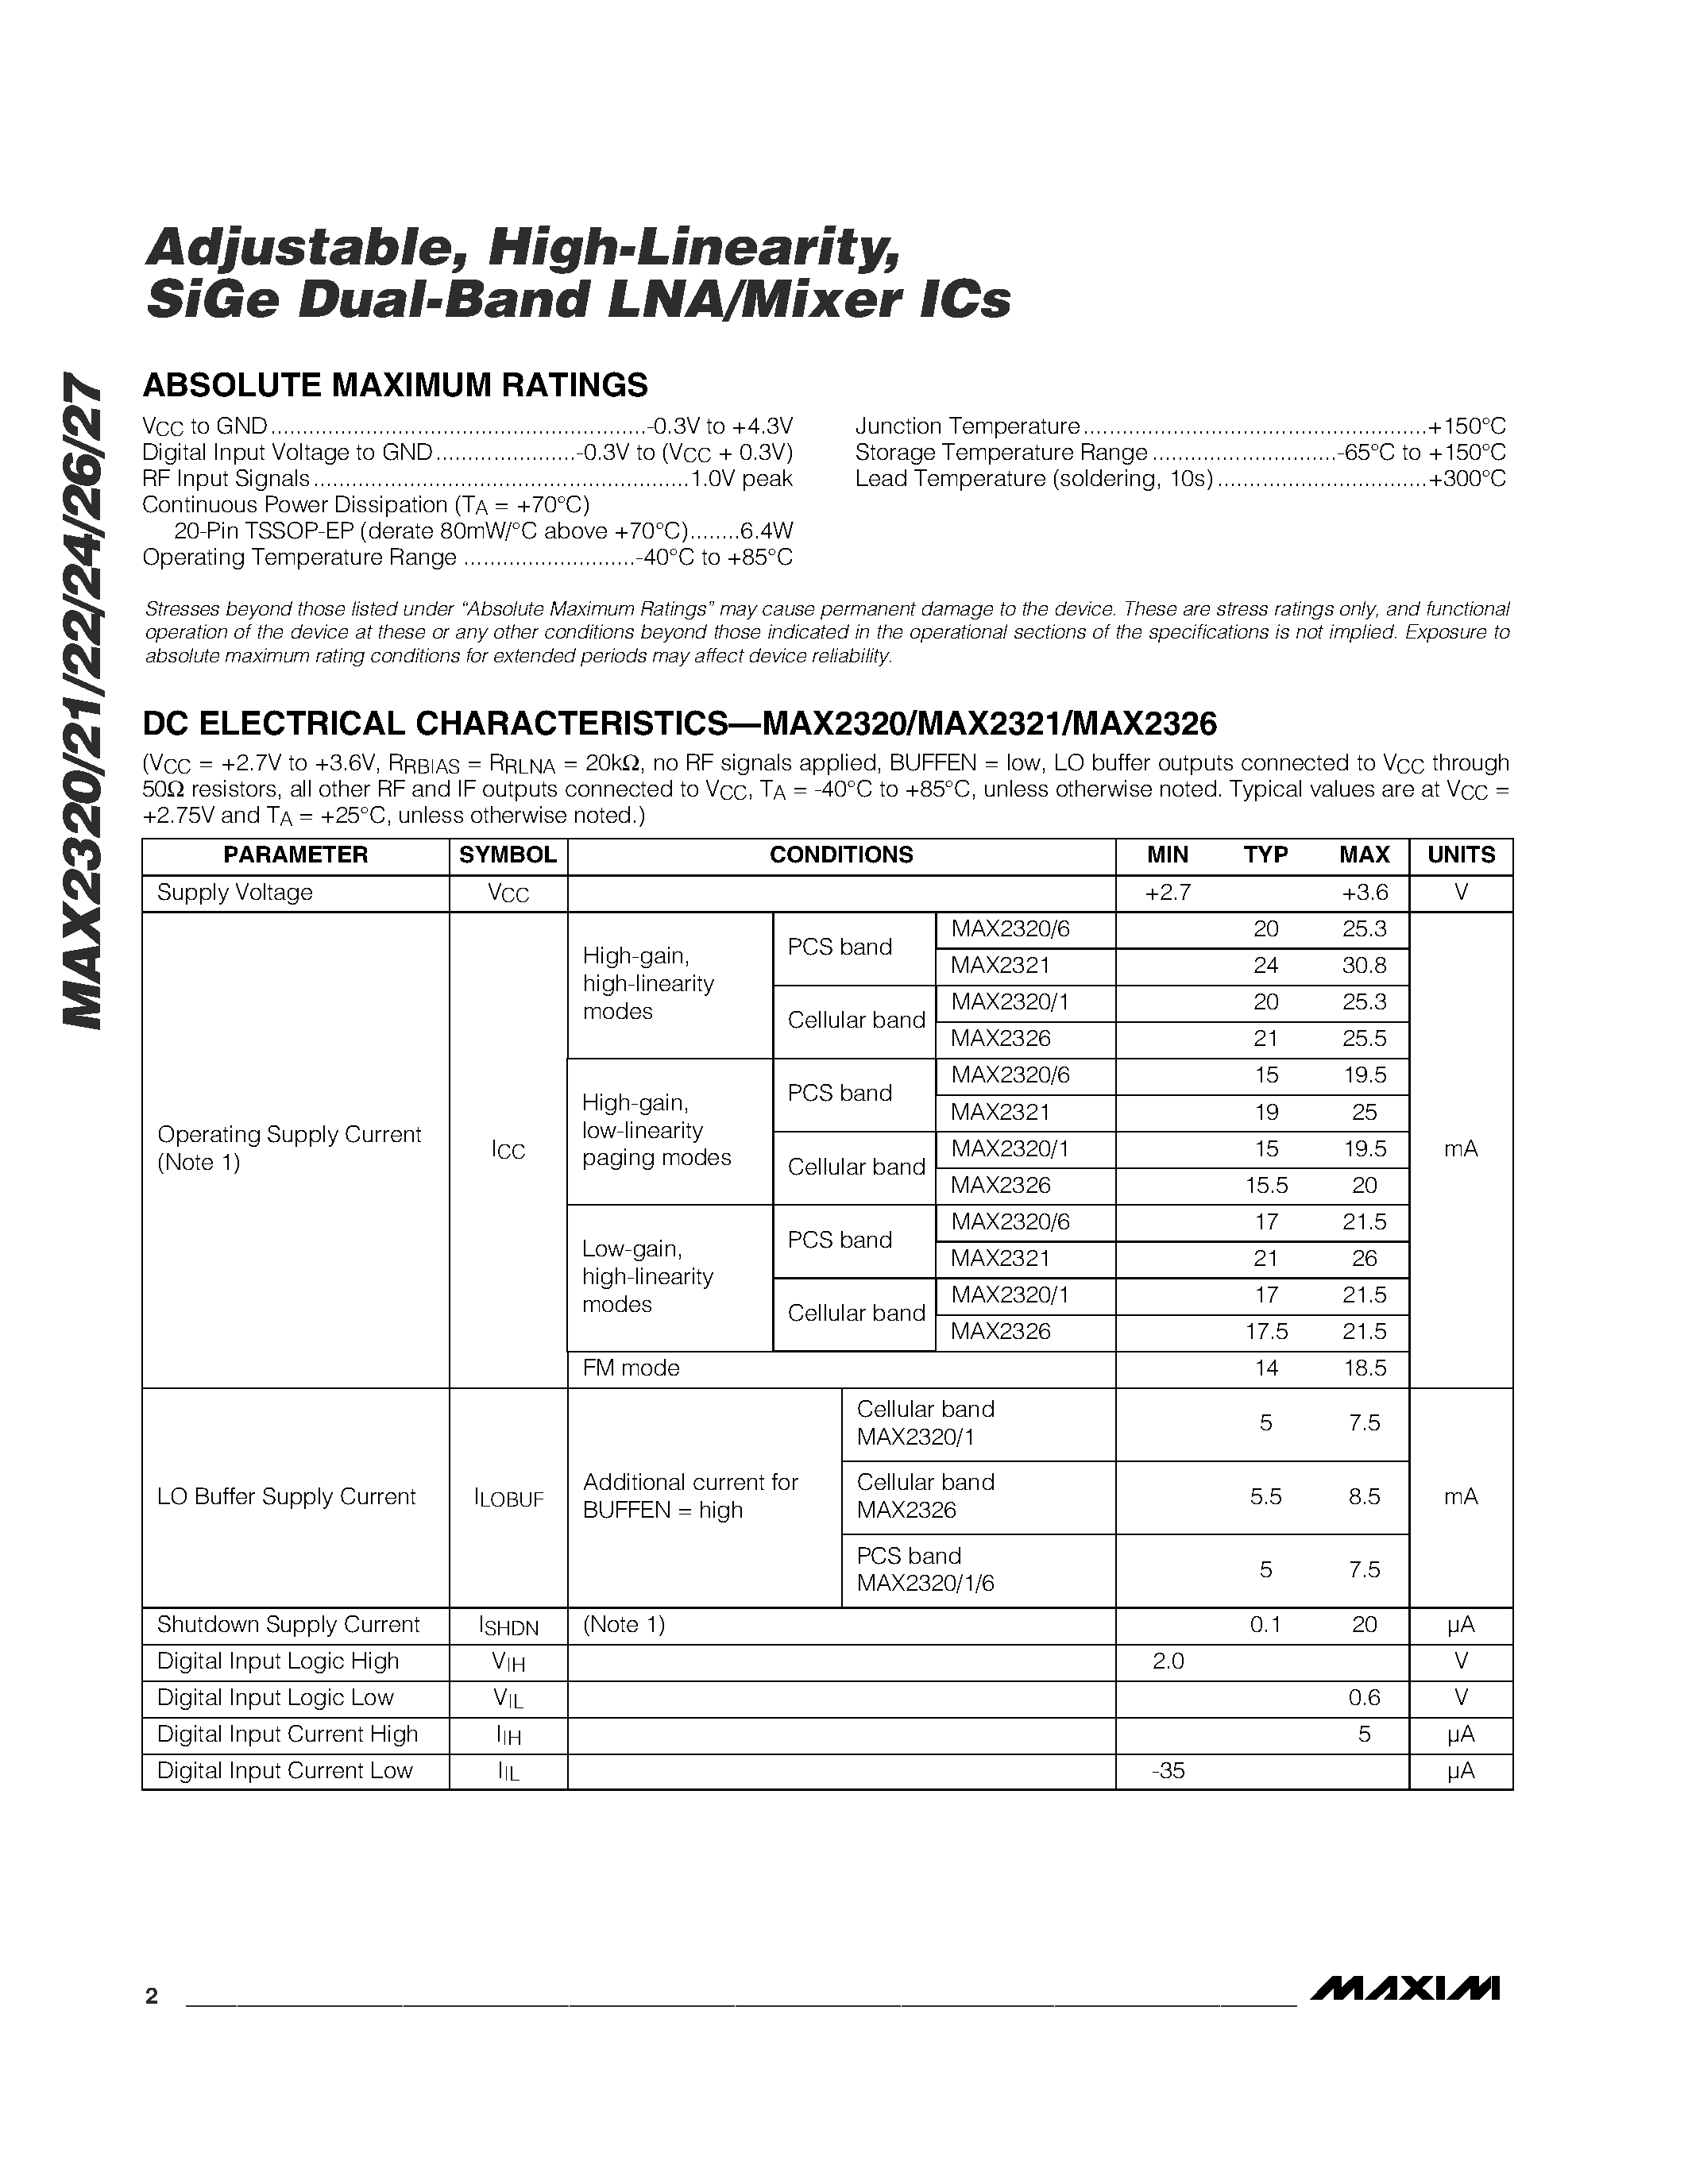 Даташит MAX2324EUP - Adjustable / High-Linearity / SiGe Dual-Band LNA/Mixer ICs страница 2